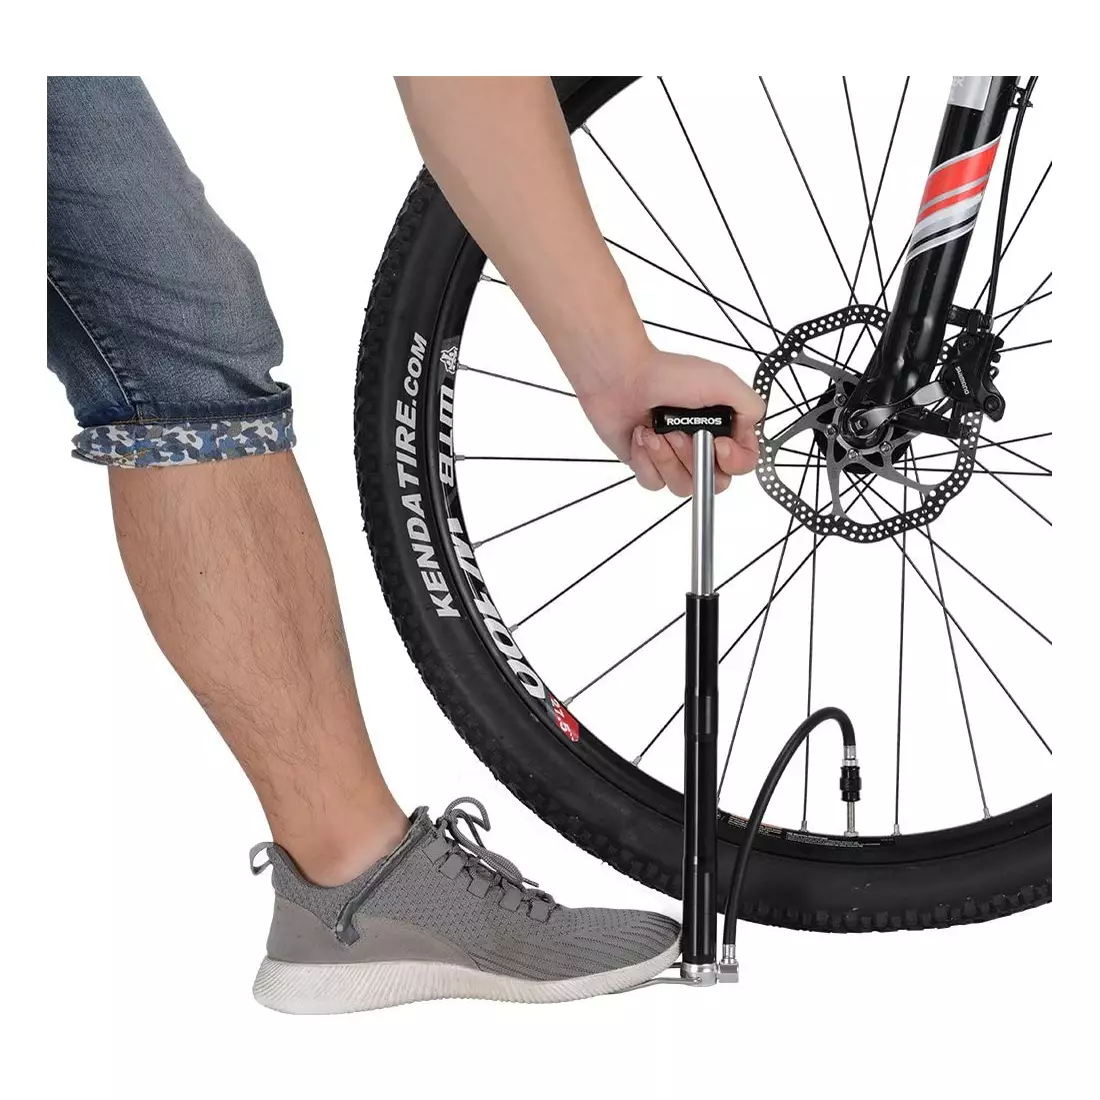 Rockbros univerzálne ručné / podlahové čerpadlo na bicykel mini, čierna MFP-BK